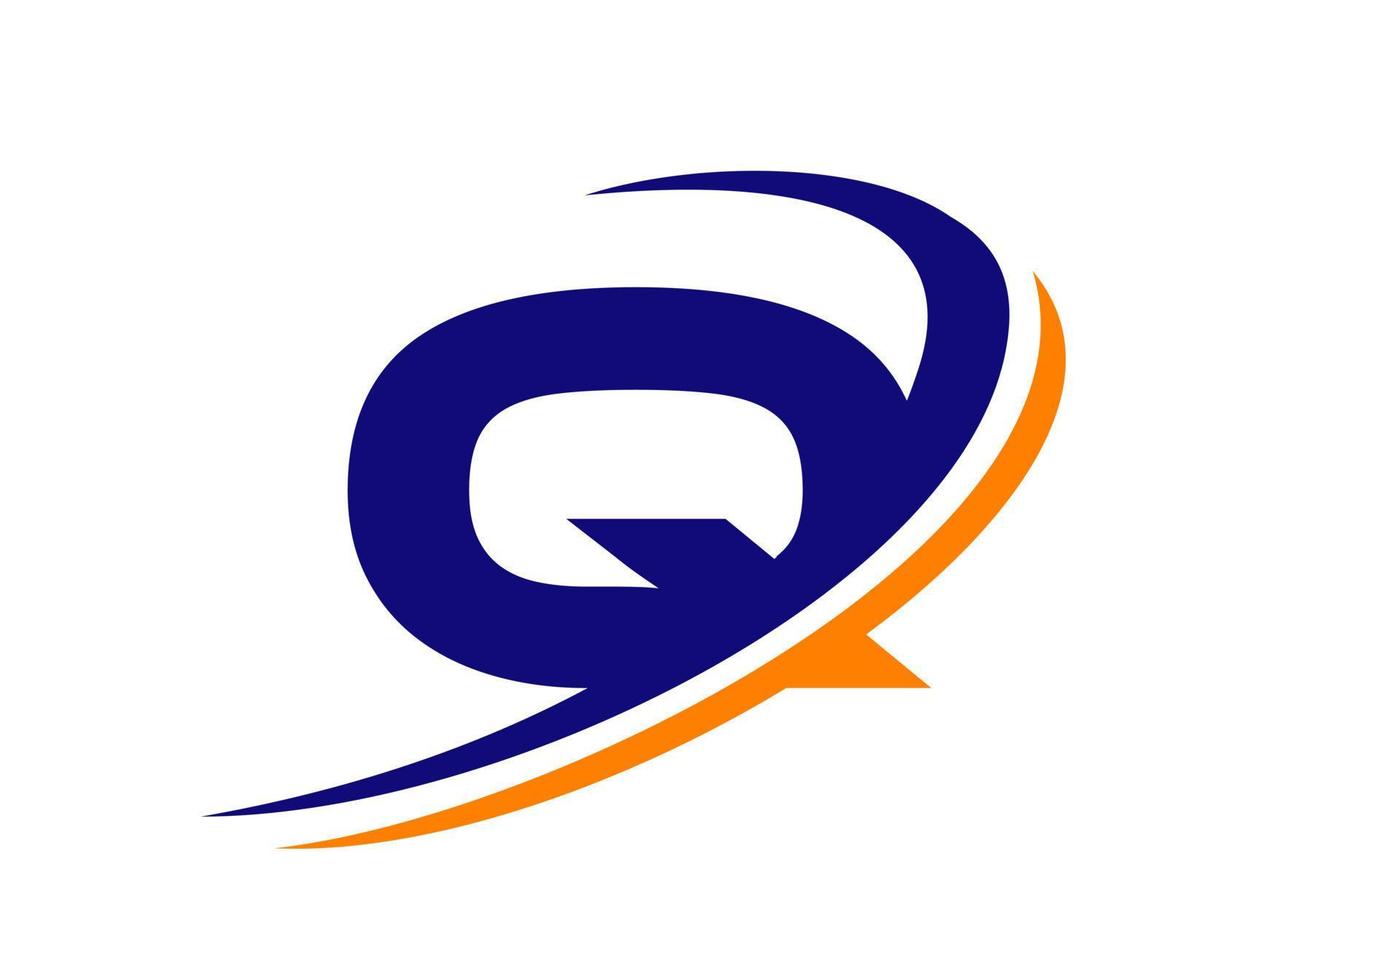 modelo de logotipo comercial de carta q. design de logotipo q inicial para imóveis, finanças, marketing, gerenciamento, construção, etc. vetor